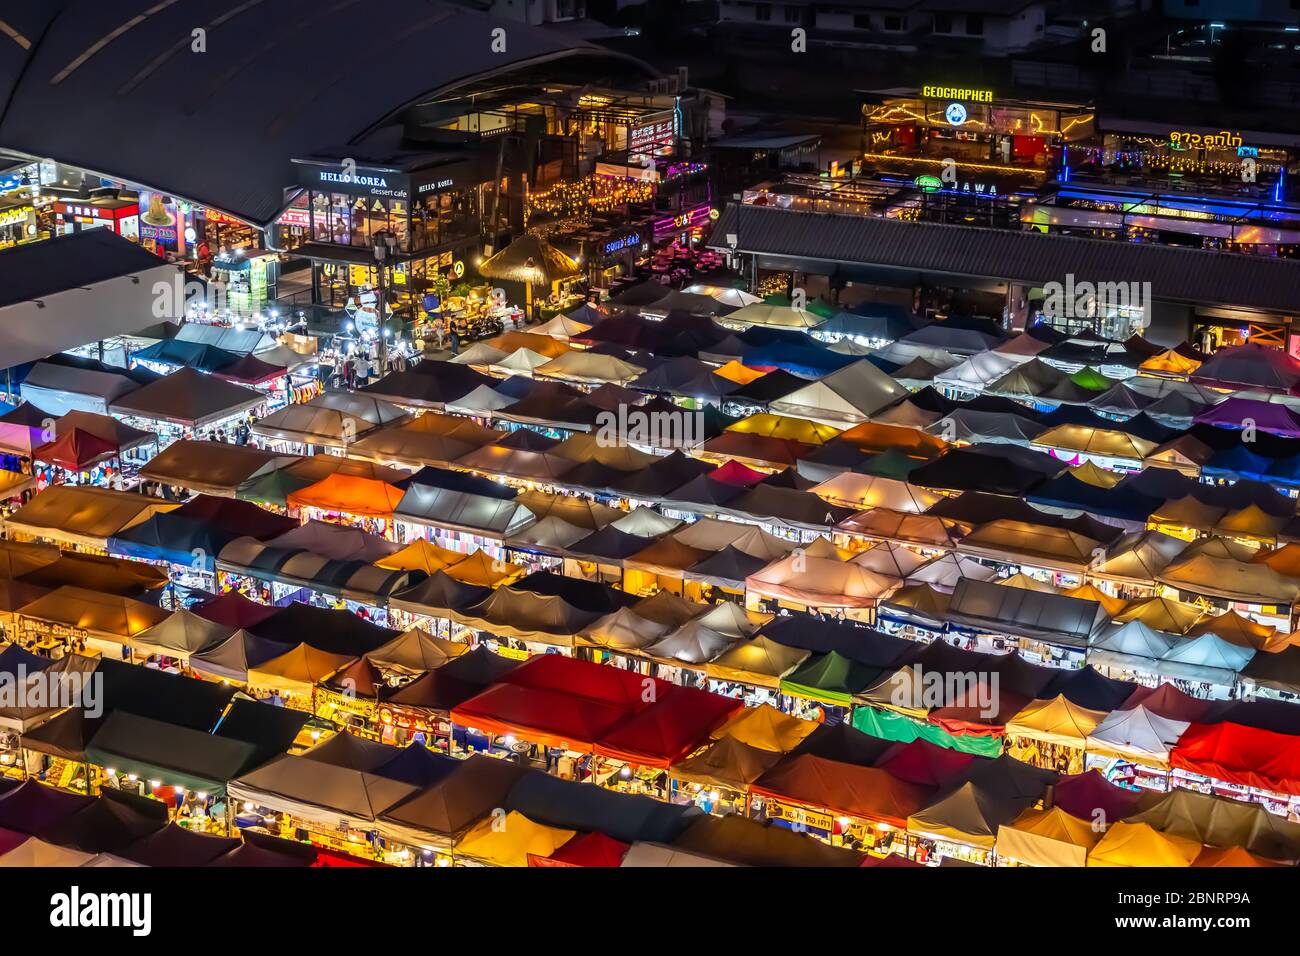 Bangkok / Thaïlande - 8 février 2020: Nom de ce lieu ' Ratchada Rot Fai Night train Market ' dans le centre-ville de Bangkok Banque D'Images